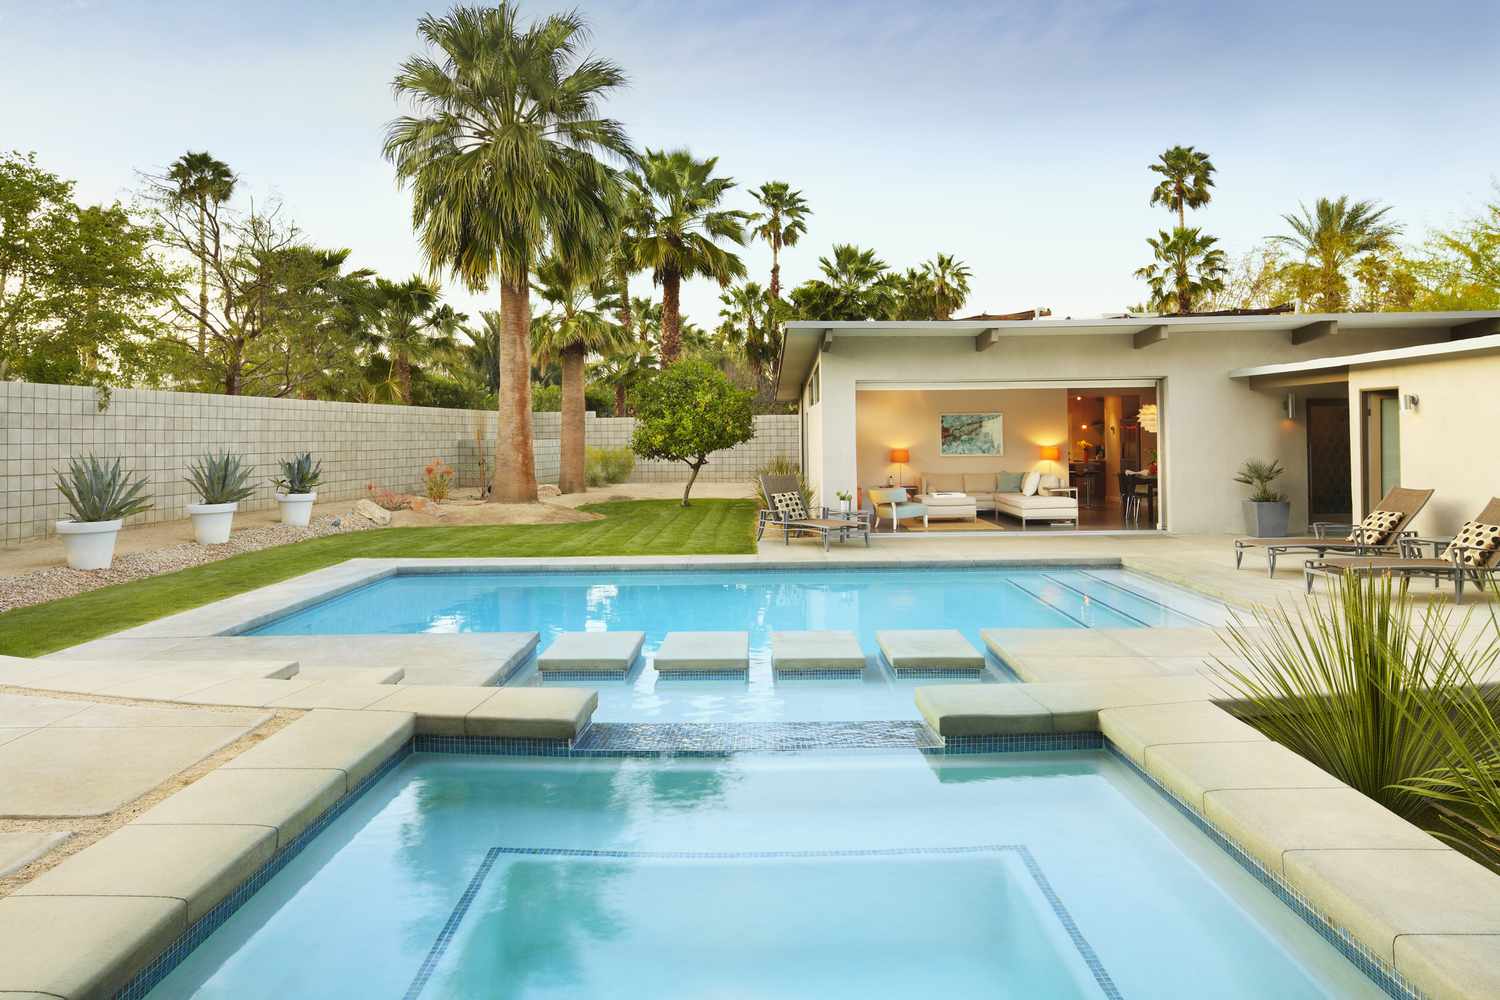 Une piscine à débordement entourée de palmiers et de meubles de patio.